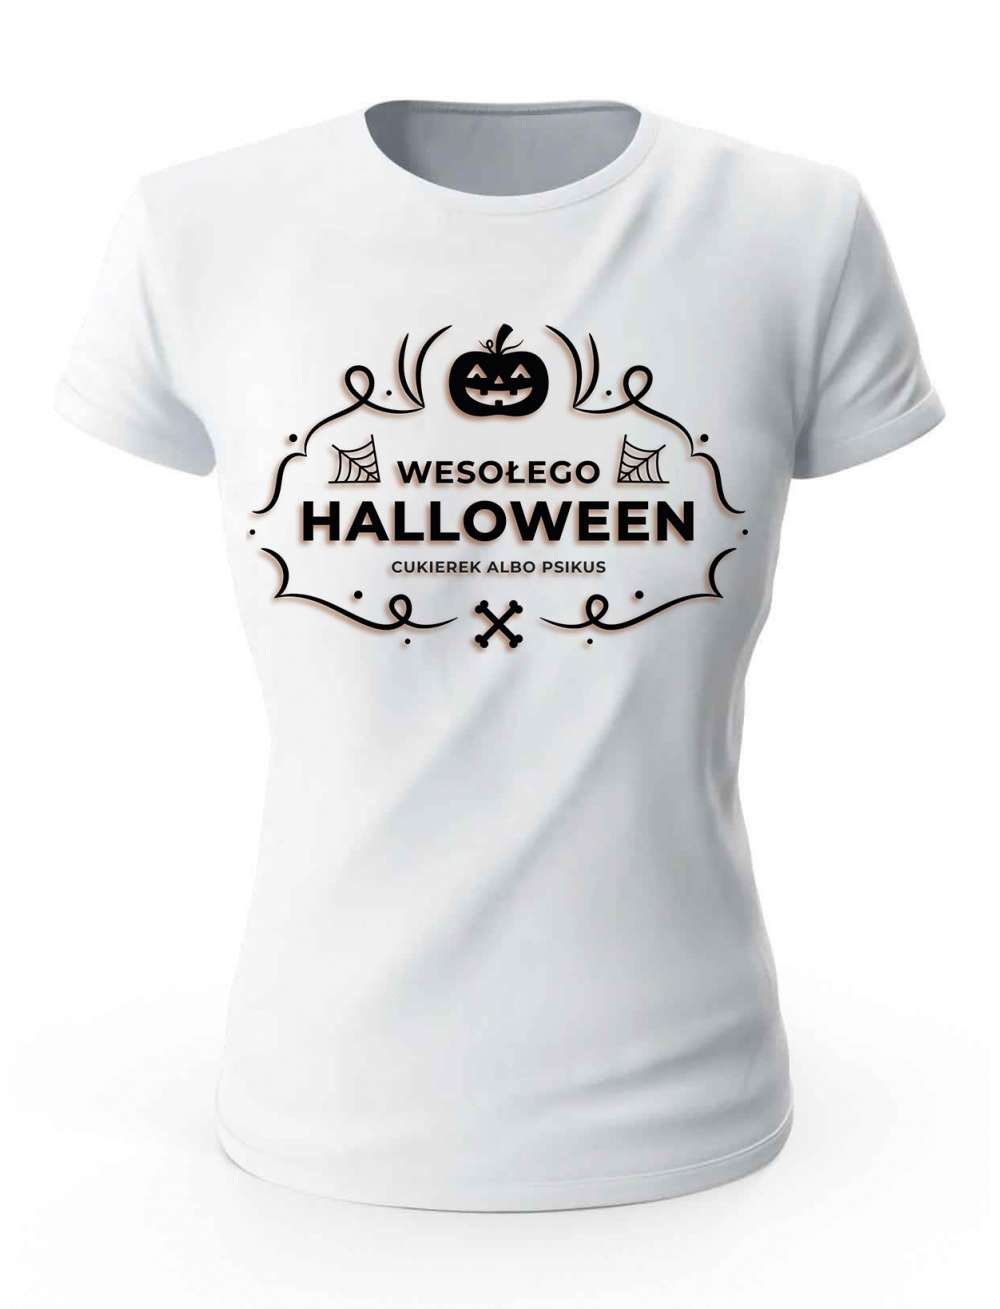 Koszulka Damska Na Wesołego Halloween